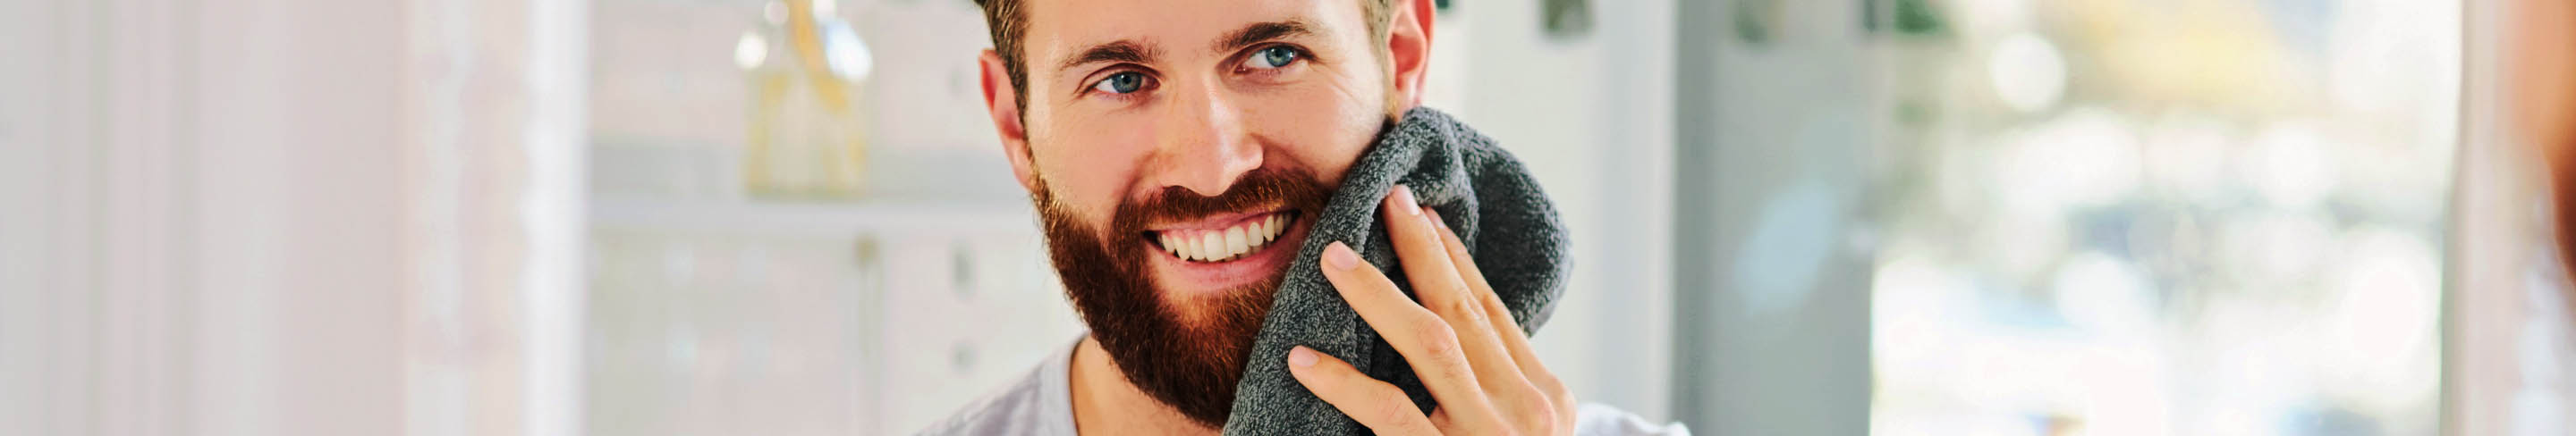 Welche Produkte brauche ich für die richtige Bartpflege? | SHOP APOTHEKE